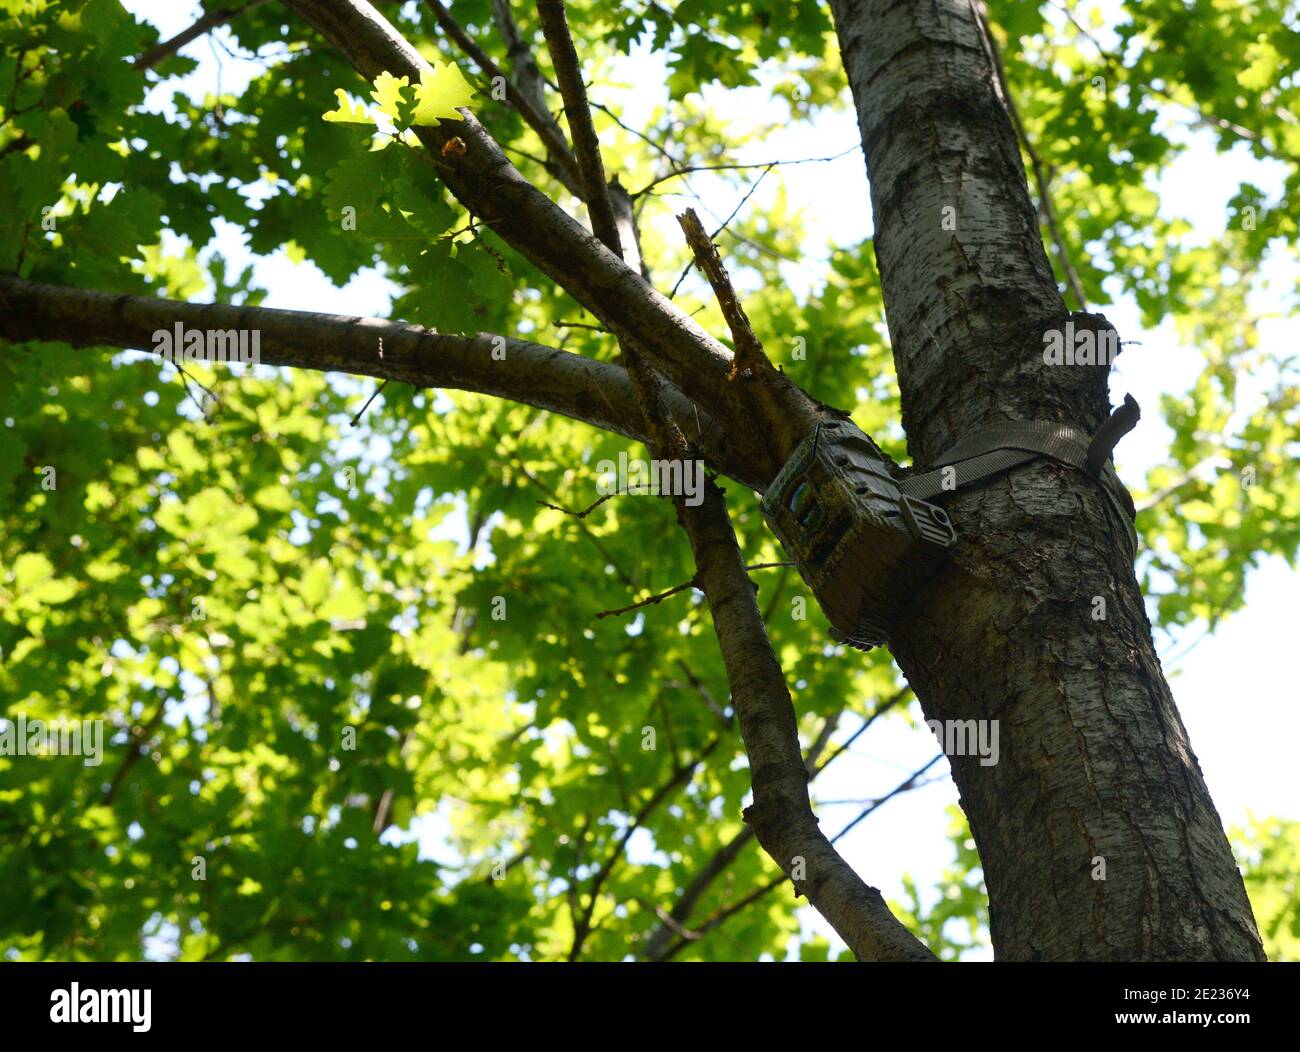 Macchina fotografica fissata ad un albero, usata dai cacciatori per spiare gli animali selvatici. Fotocamera Black Trail Cam su Poplar Tree per catturare animali selvatici come cervi mentre camminano. Foto Stock